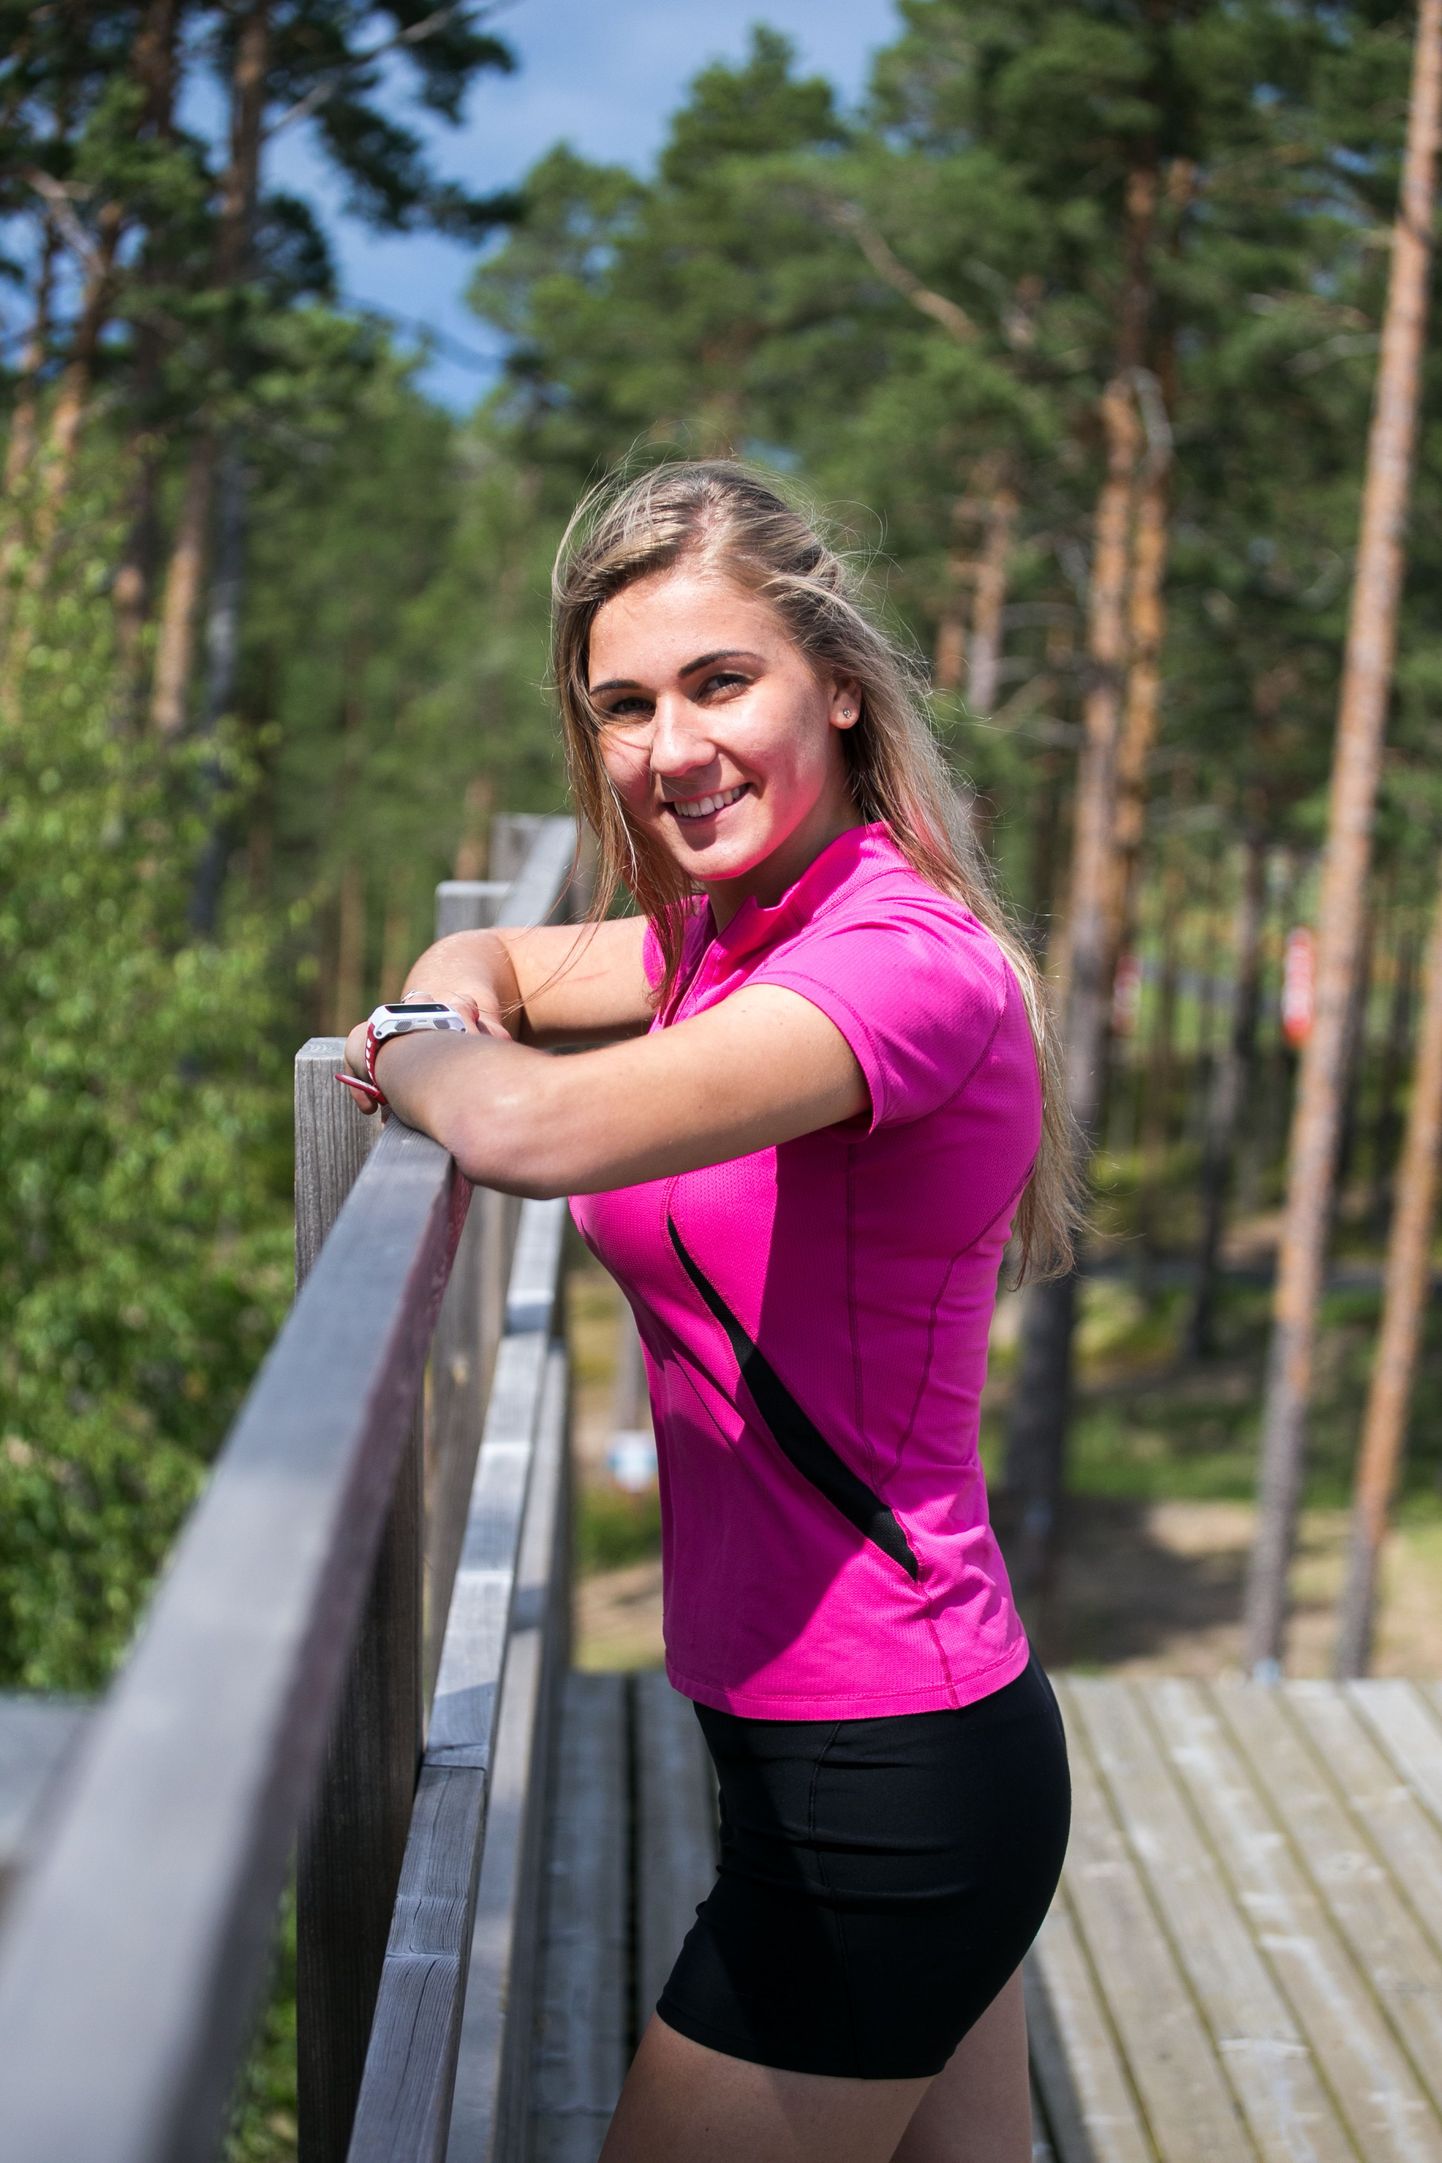 Türilt pärit Evely Kaasiku, üks Eesti tipporienteerujaid, on mitmekülgne ja särav noor naine. Orienteerumise kõrvalt käib ta koolis ja töötab lausa kahe koha peal.